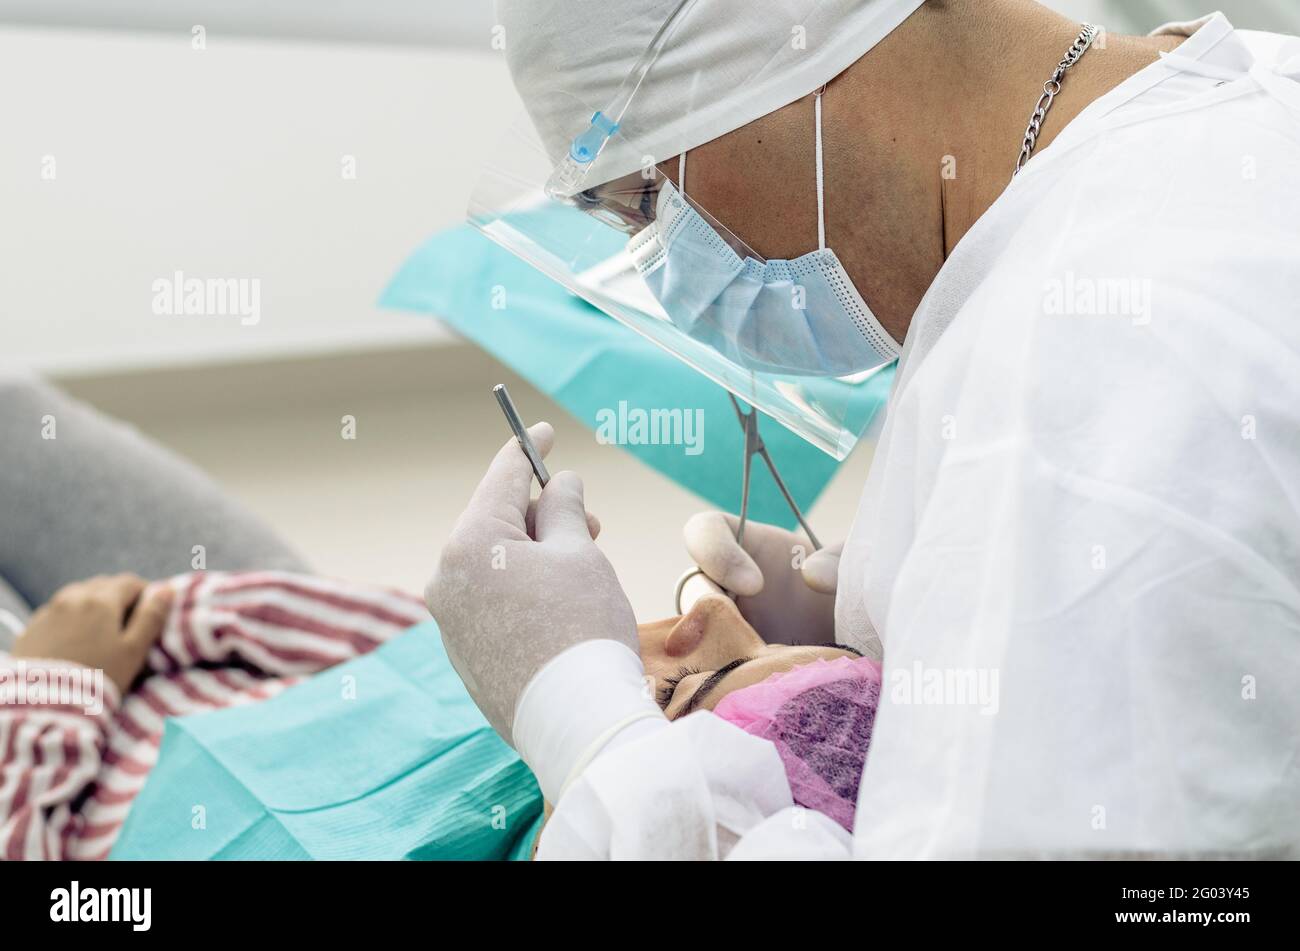 Der Zahnarzt oder Arzt trägt im Hintergrund der Zahnarztpraxis einen weißen medizinischen Kittel, eine Maske und eine Schutzbrille Stockfoto